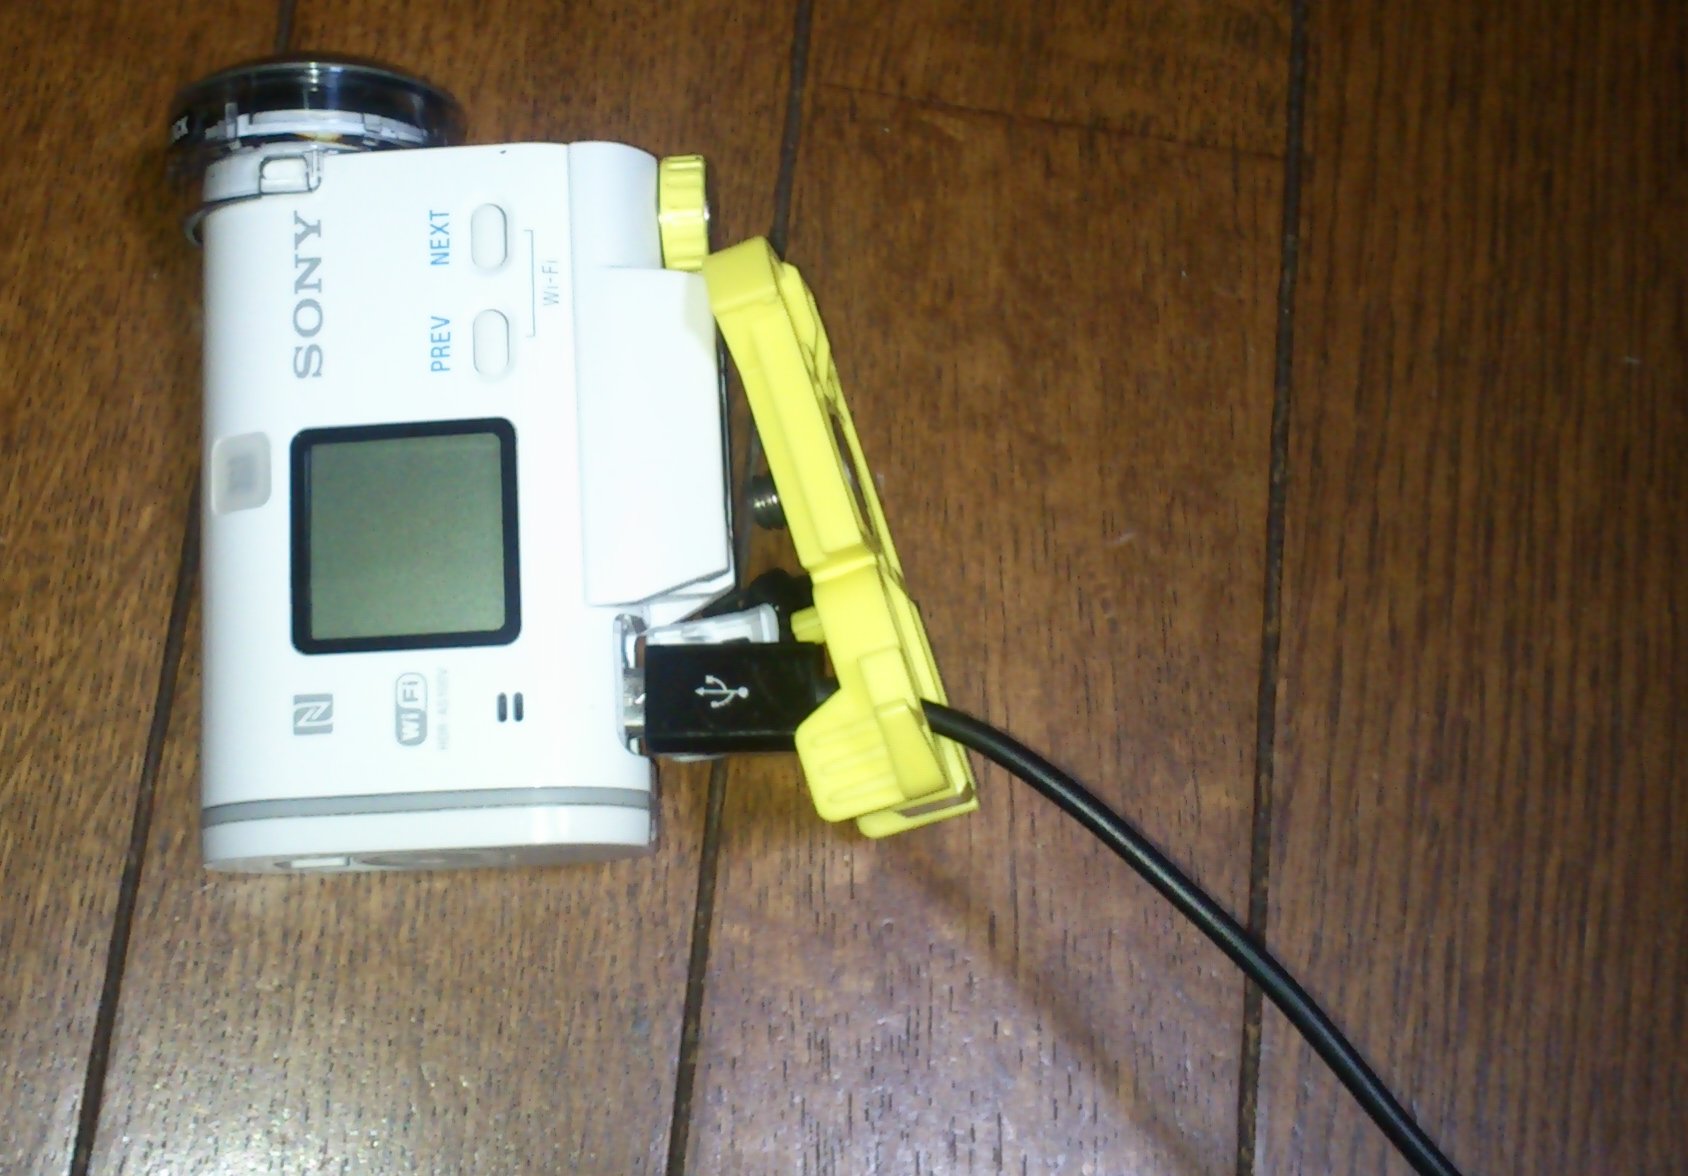 Sony アクションカム HDR-AS100V の給電問題再び (山下康成の きばらないブログ)